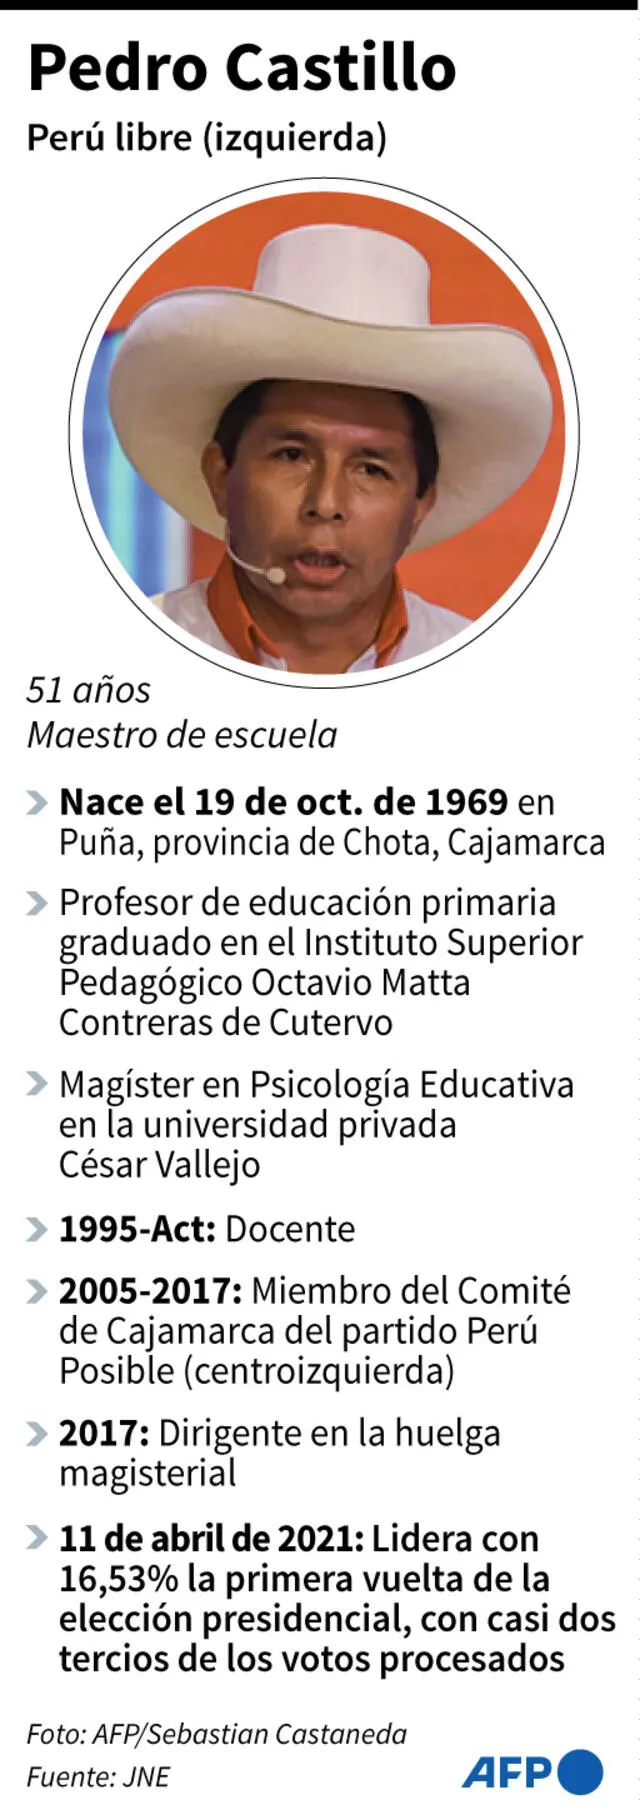 Ficha de Pedro Castillo, candidato presidencial de izquierda radical que lidera los comicios del domingo 11 de abril en Perú. Infografía: AFP